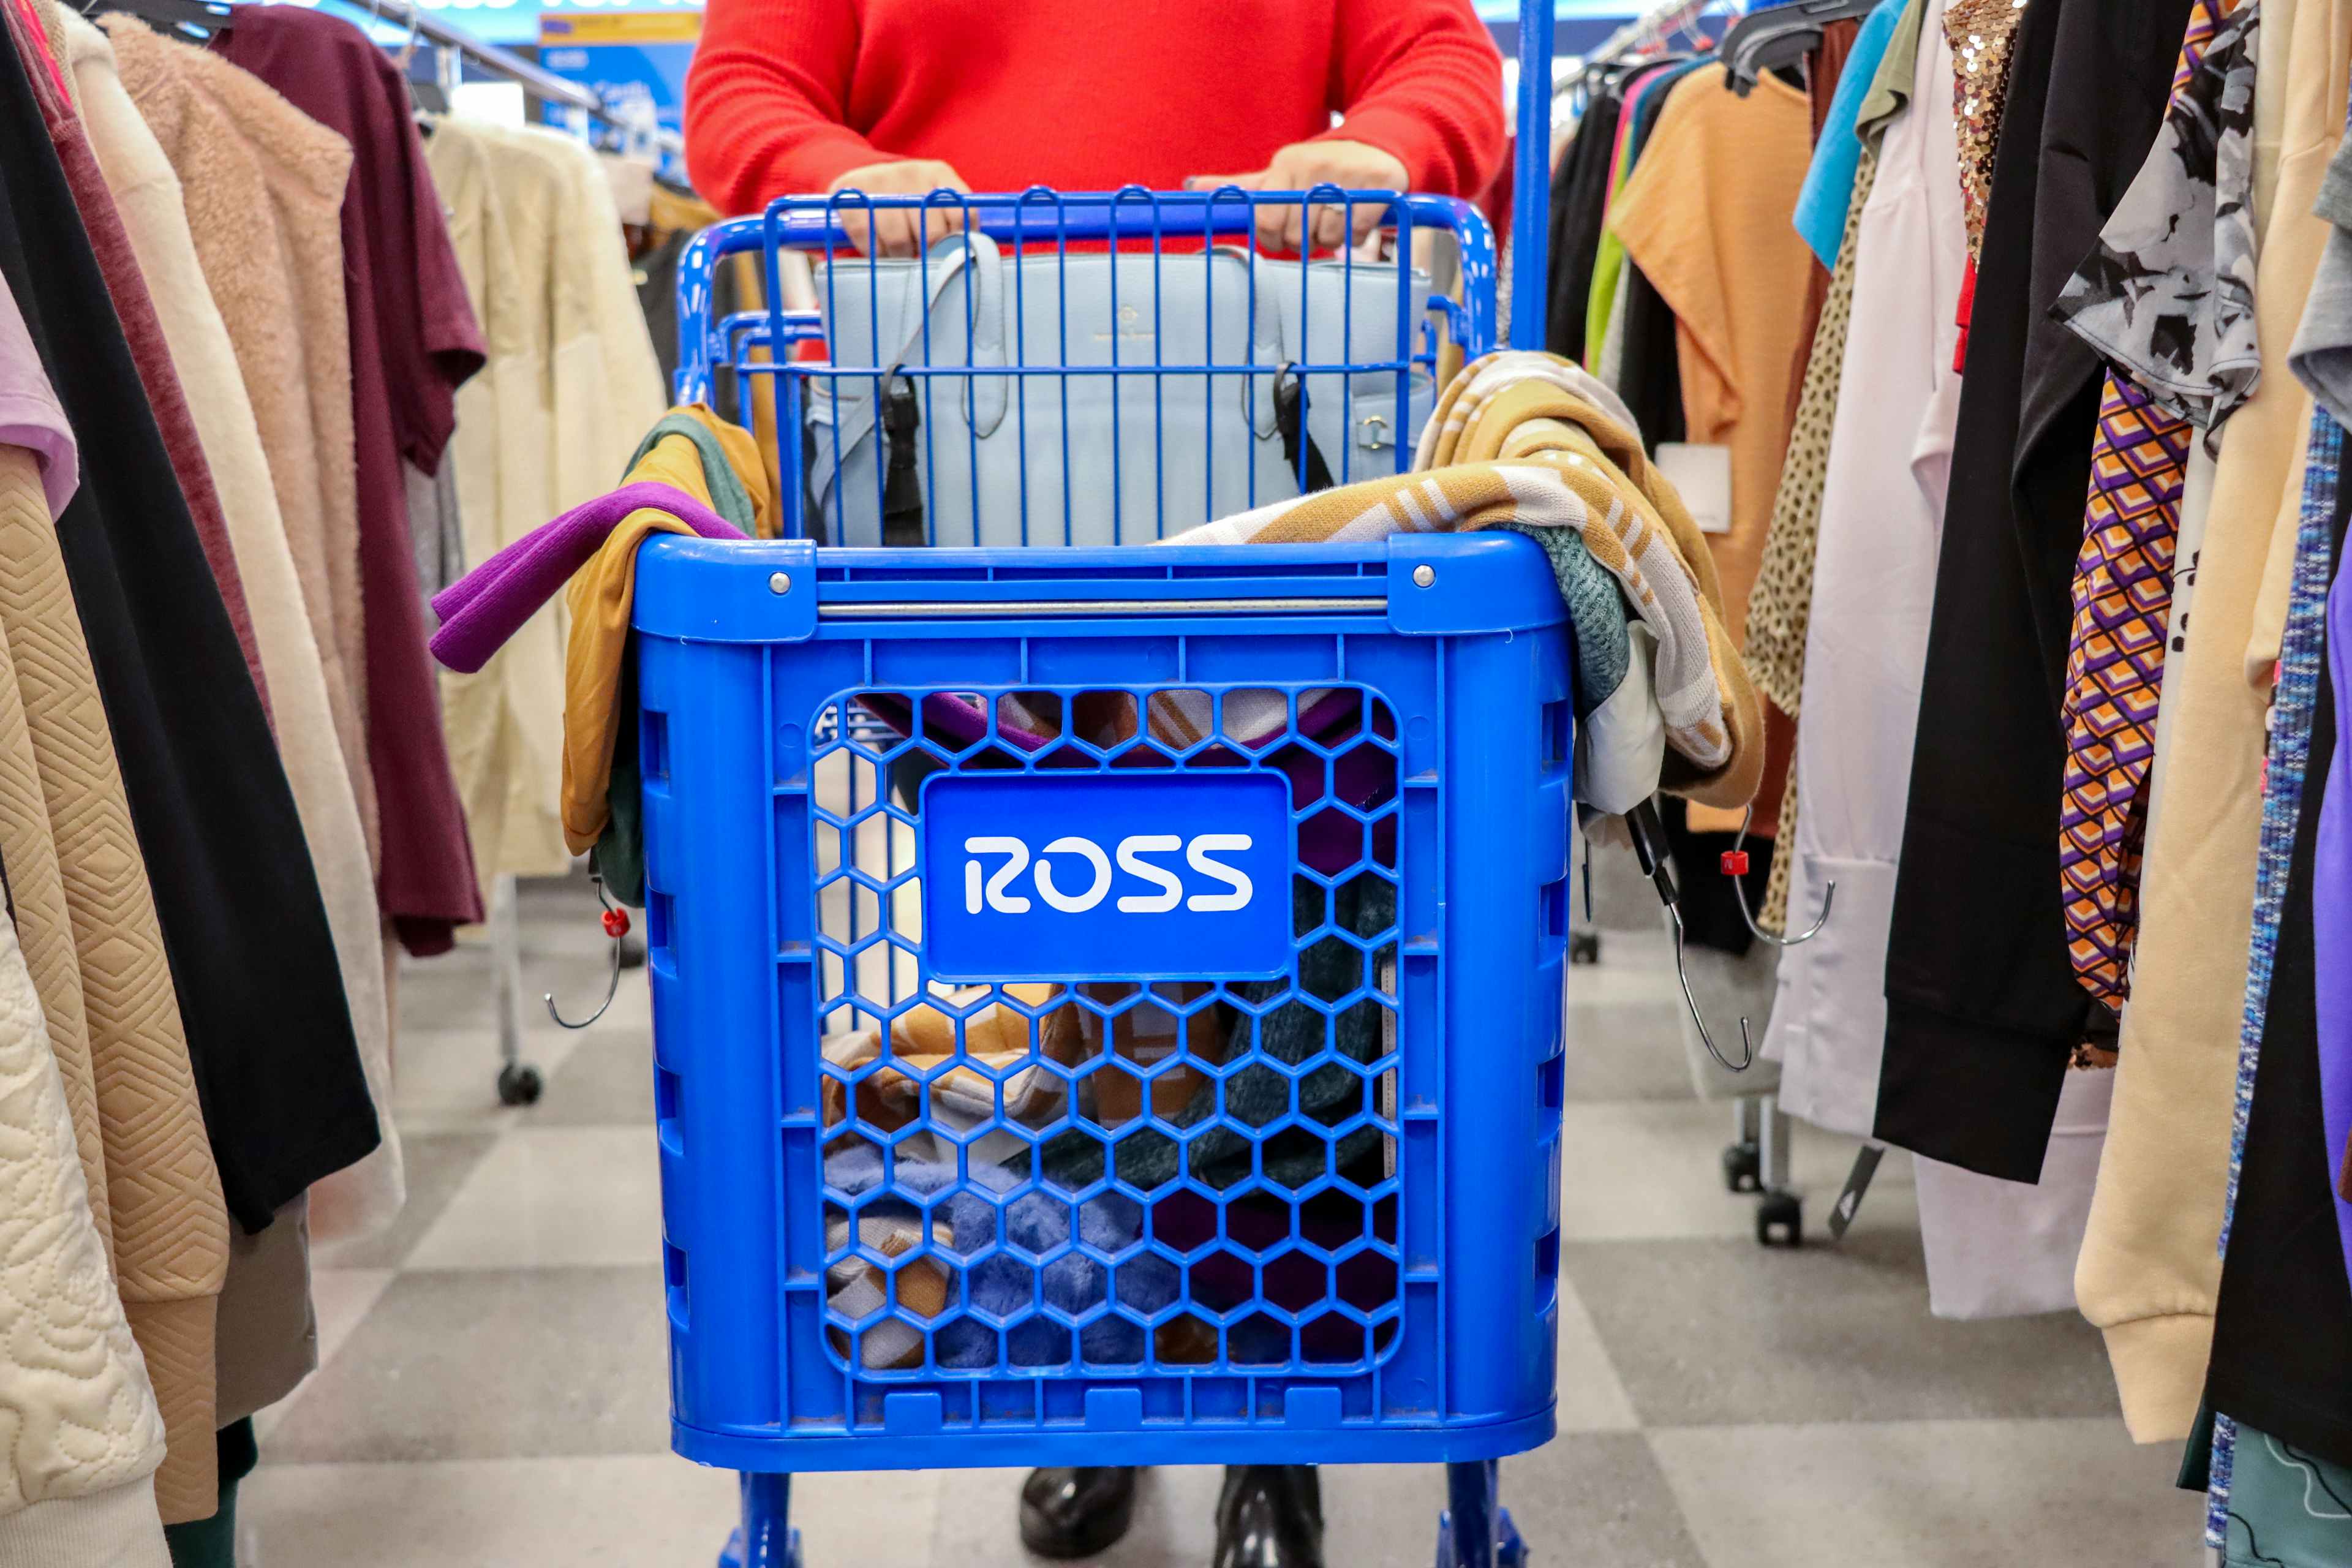 ross-cart-clothes-model-kcl-1